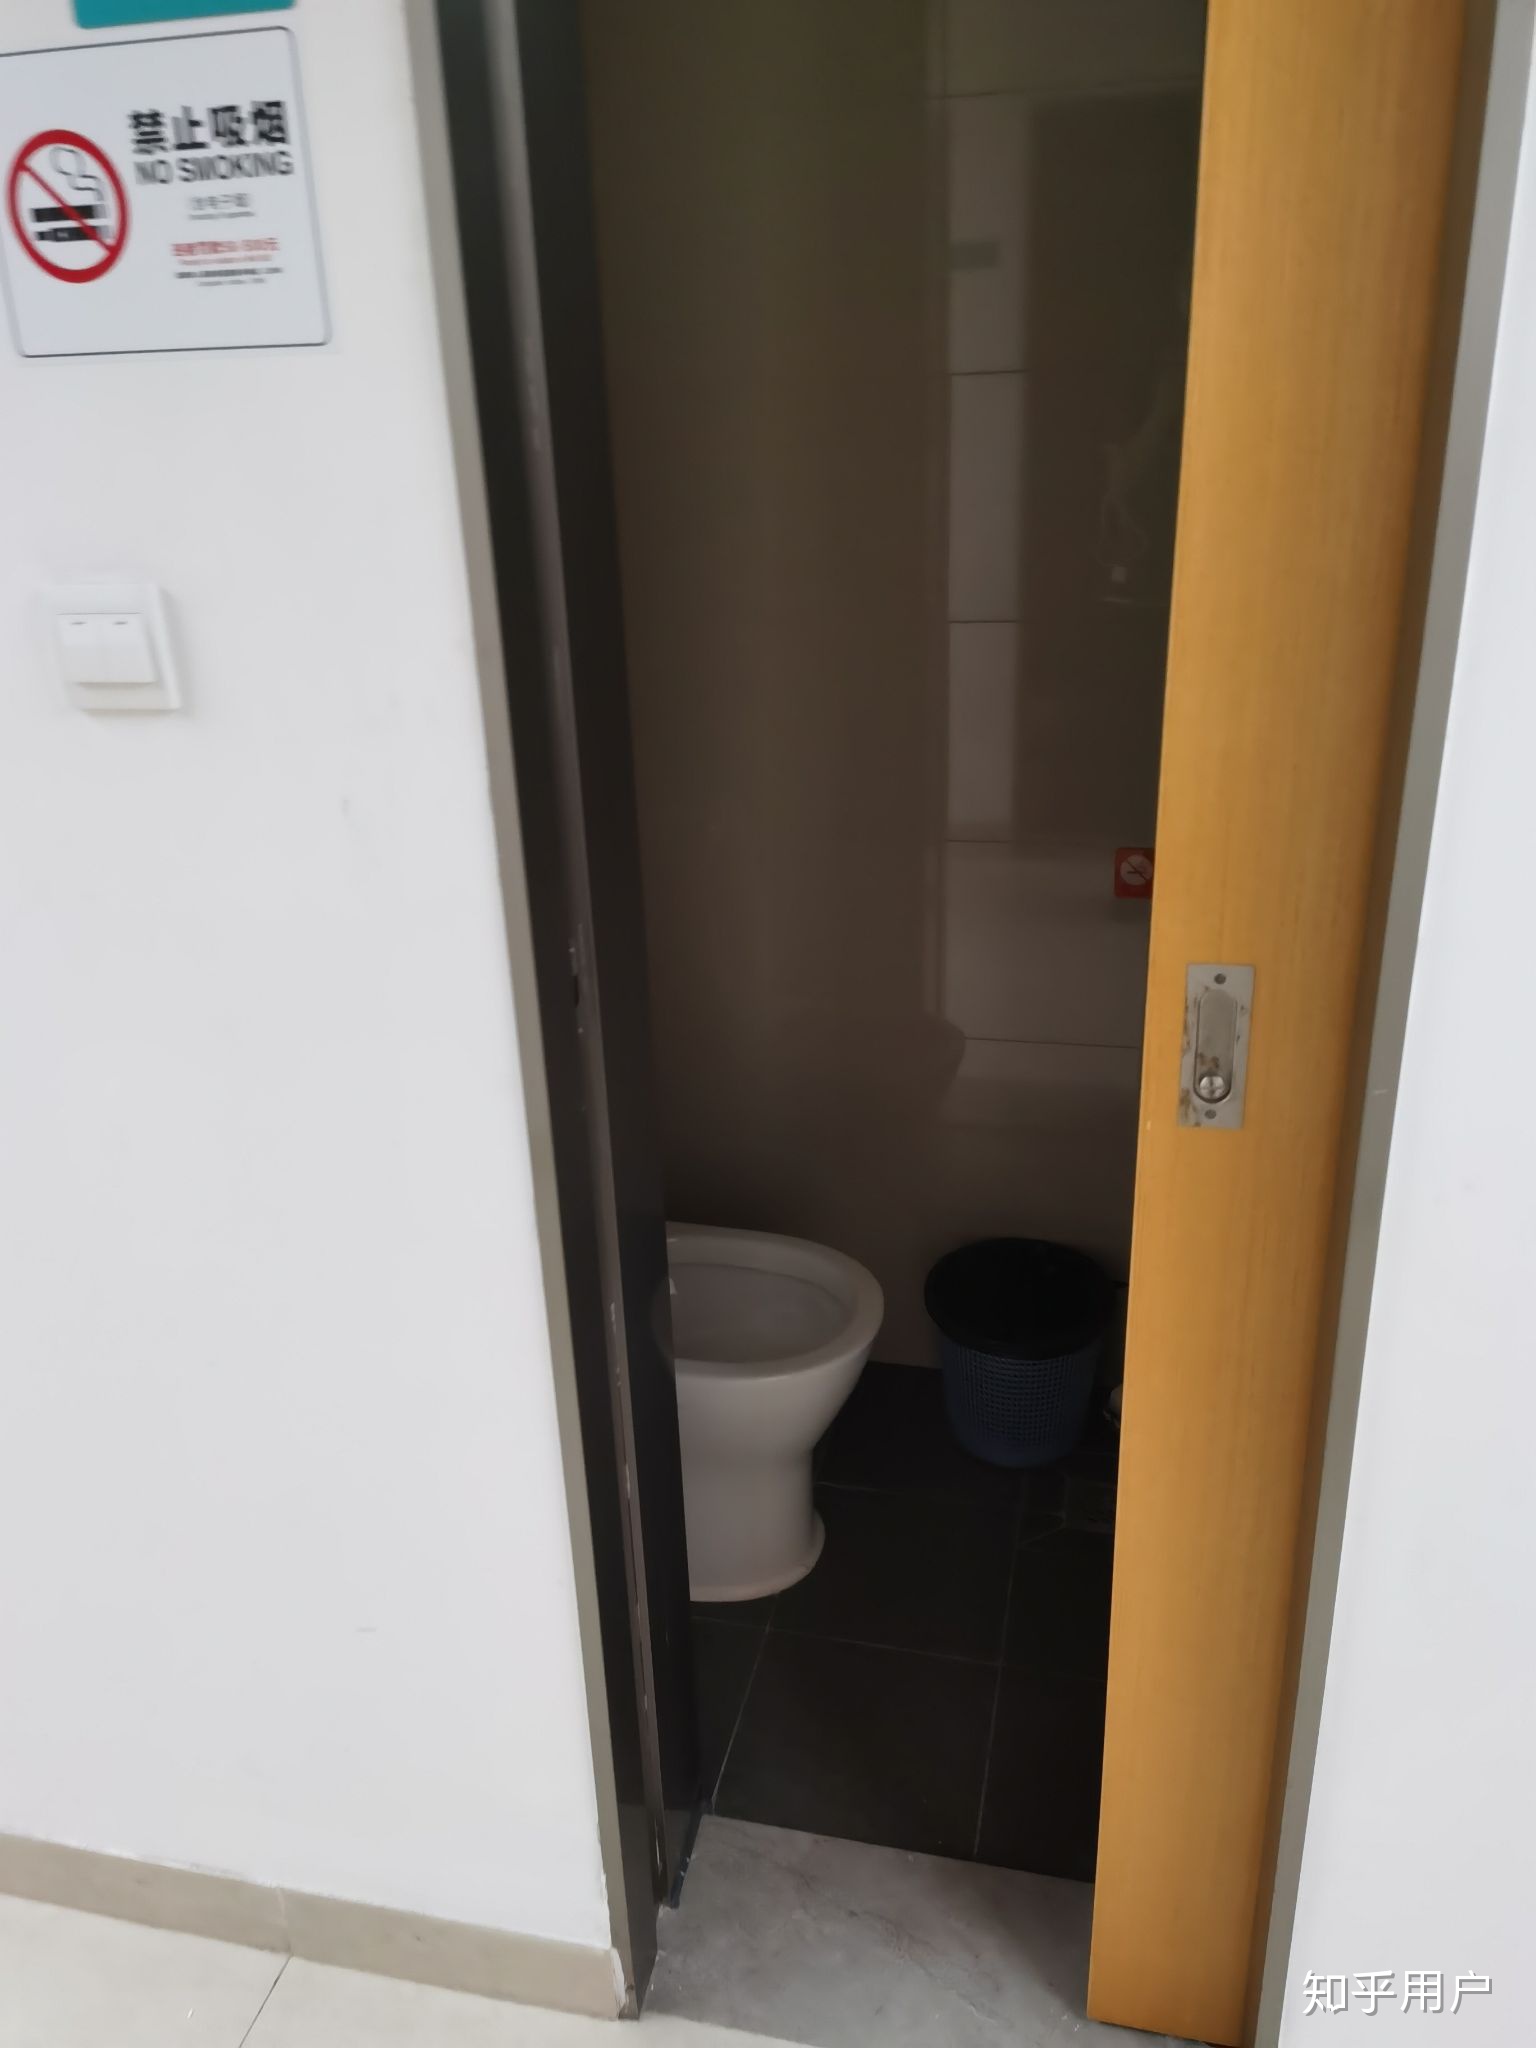 改造出的小厕所